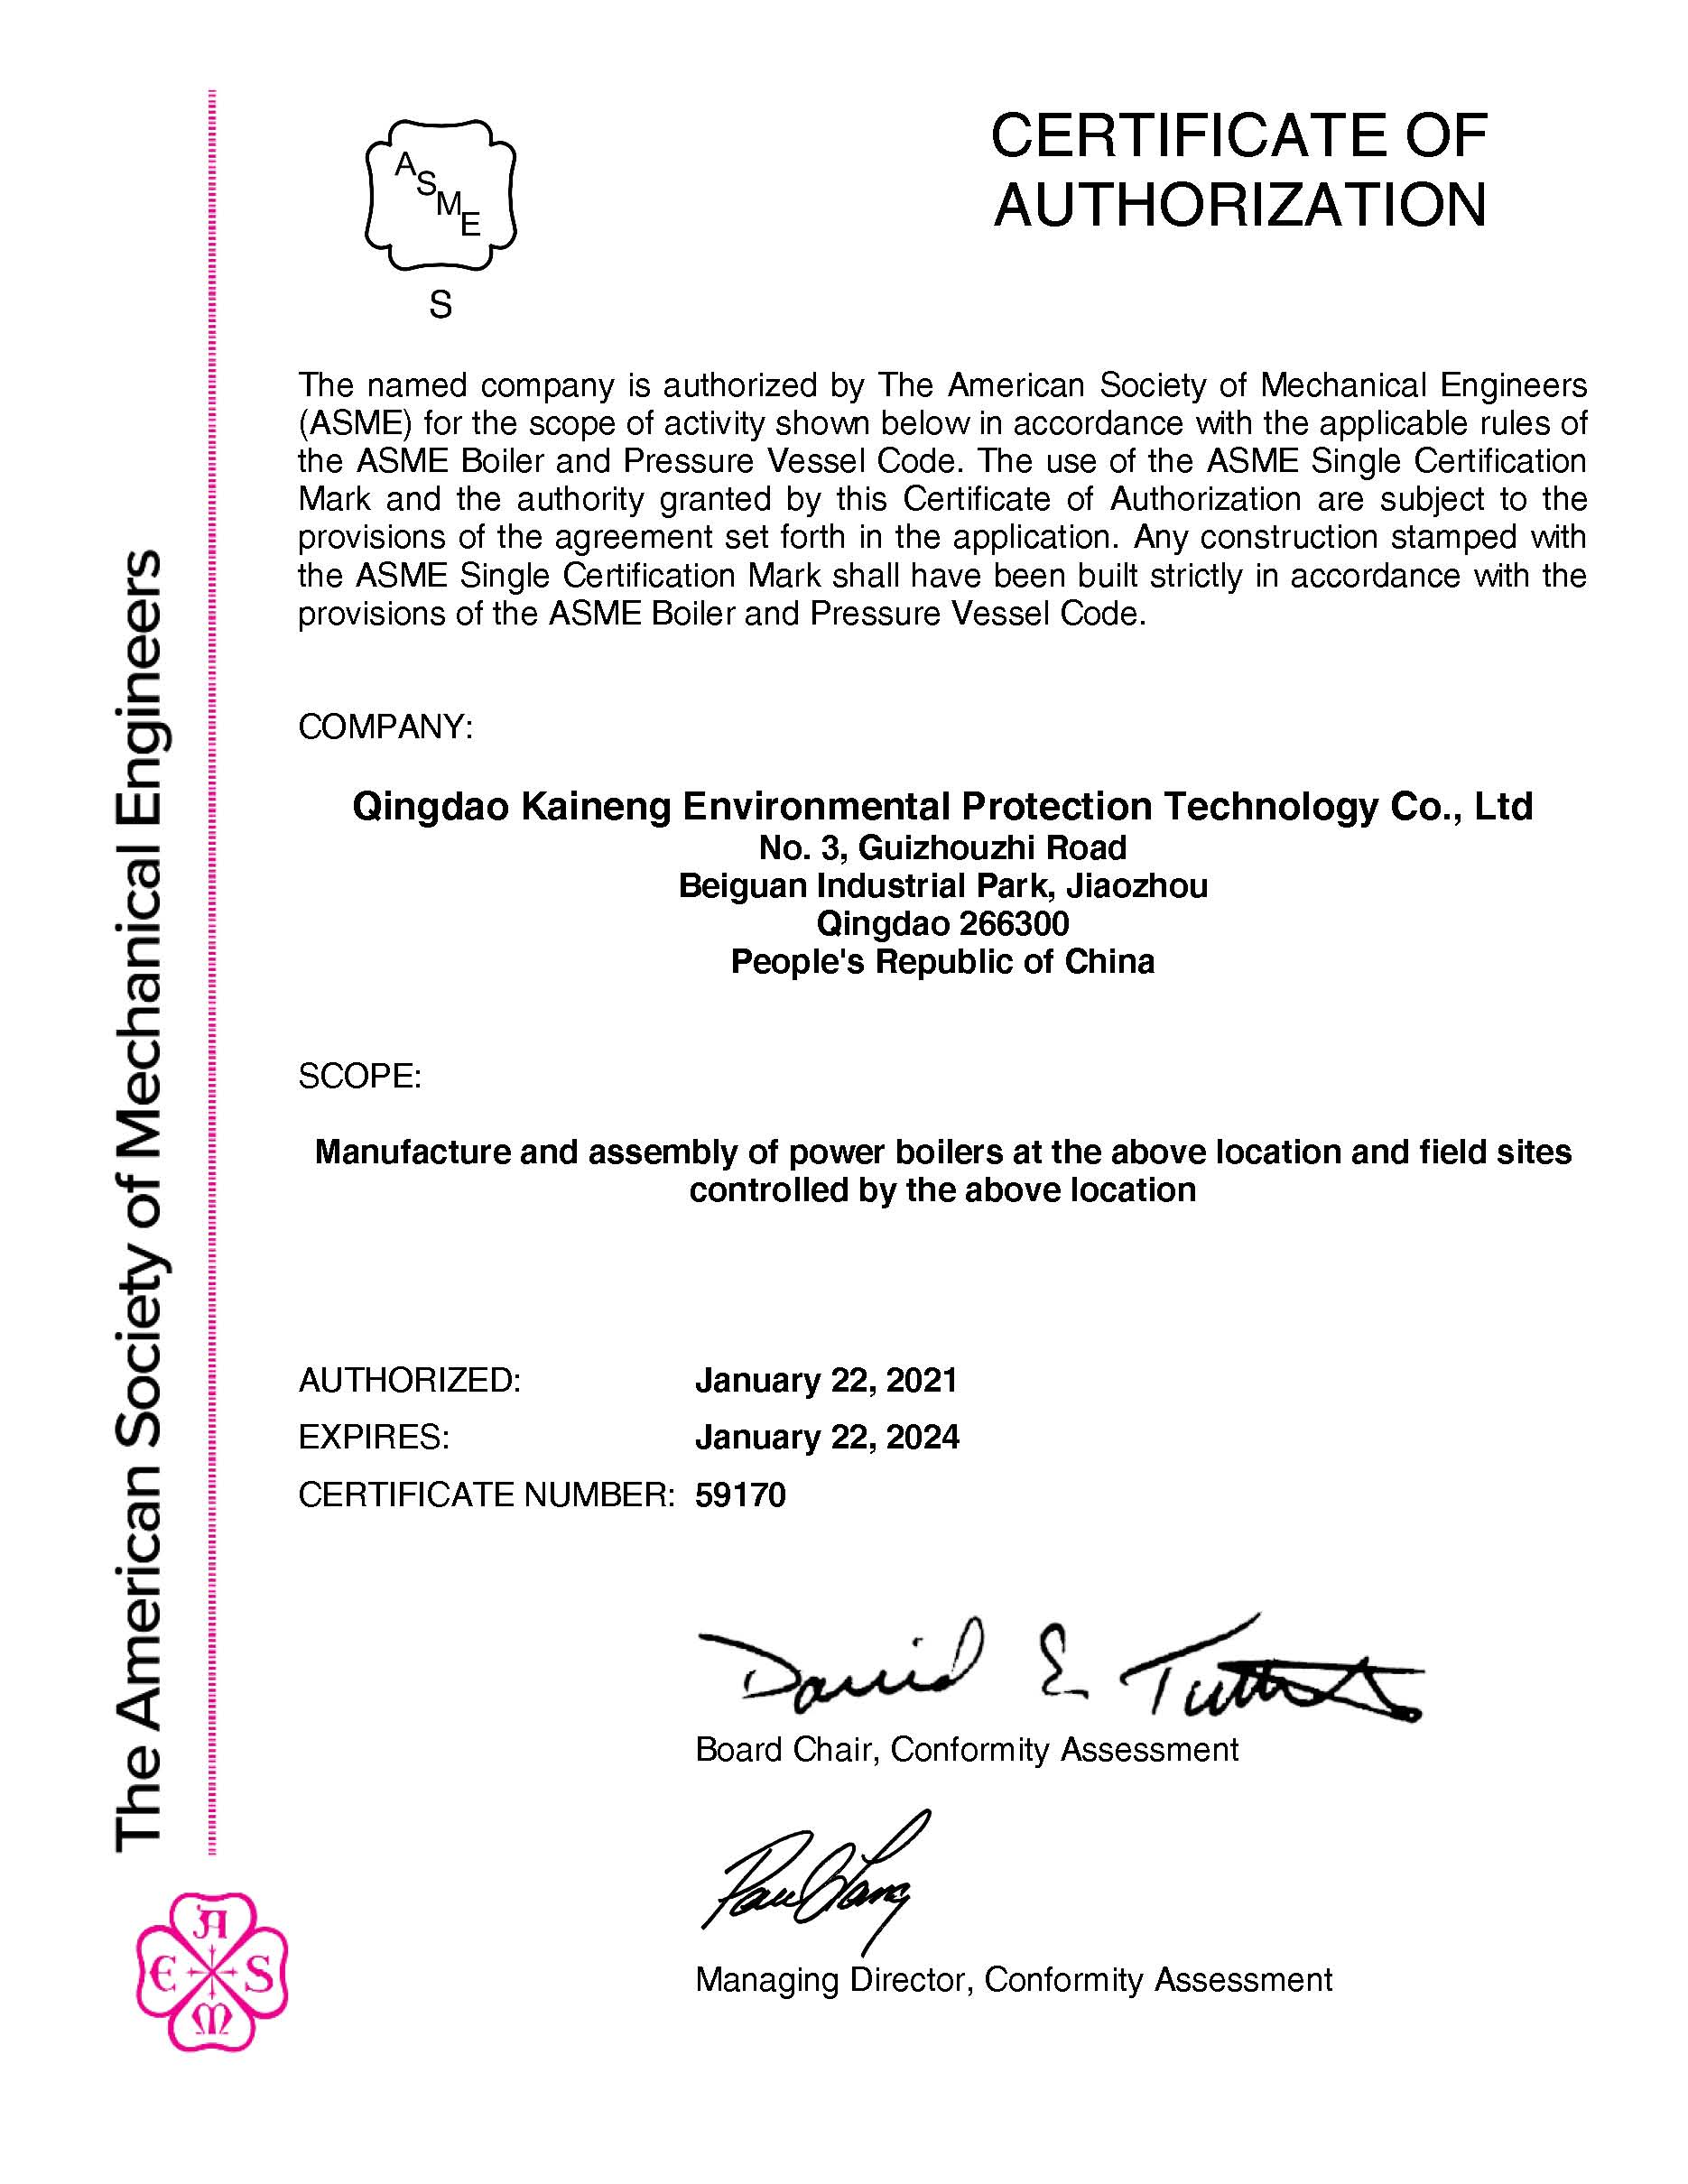 凯能科技2021年取得ASME认证